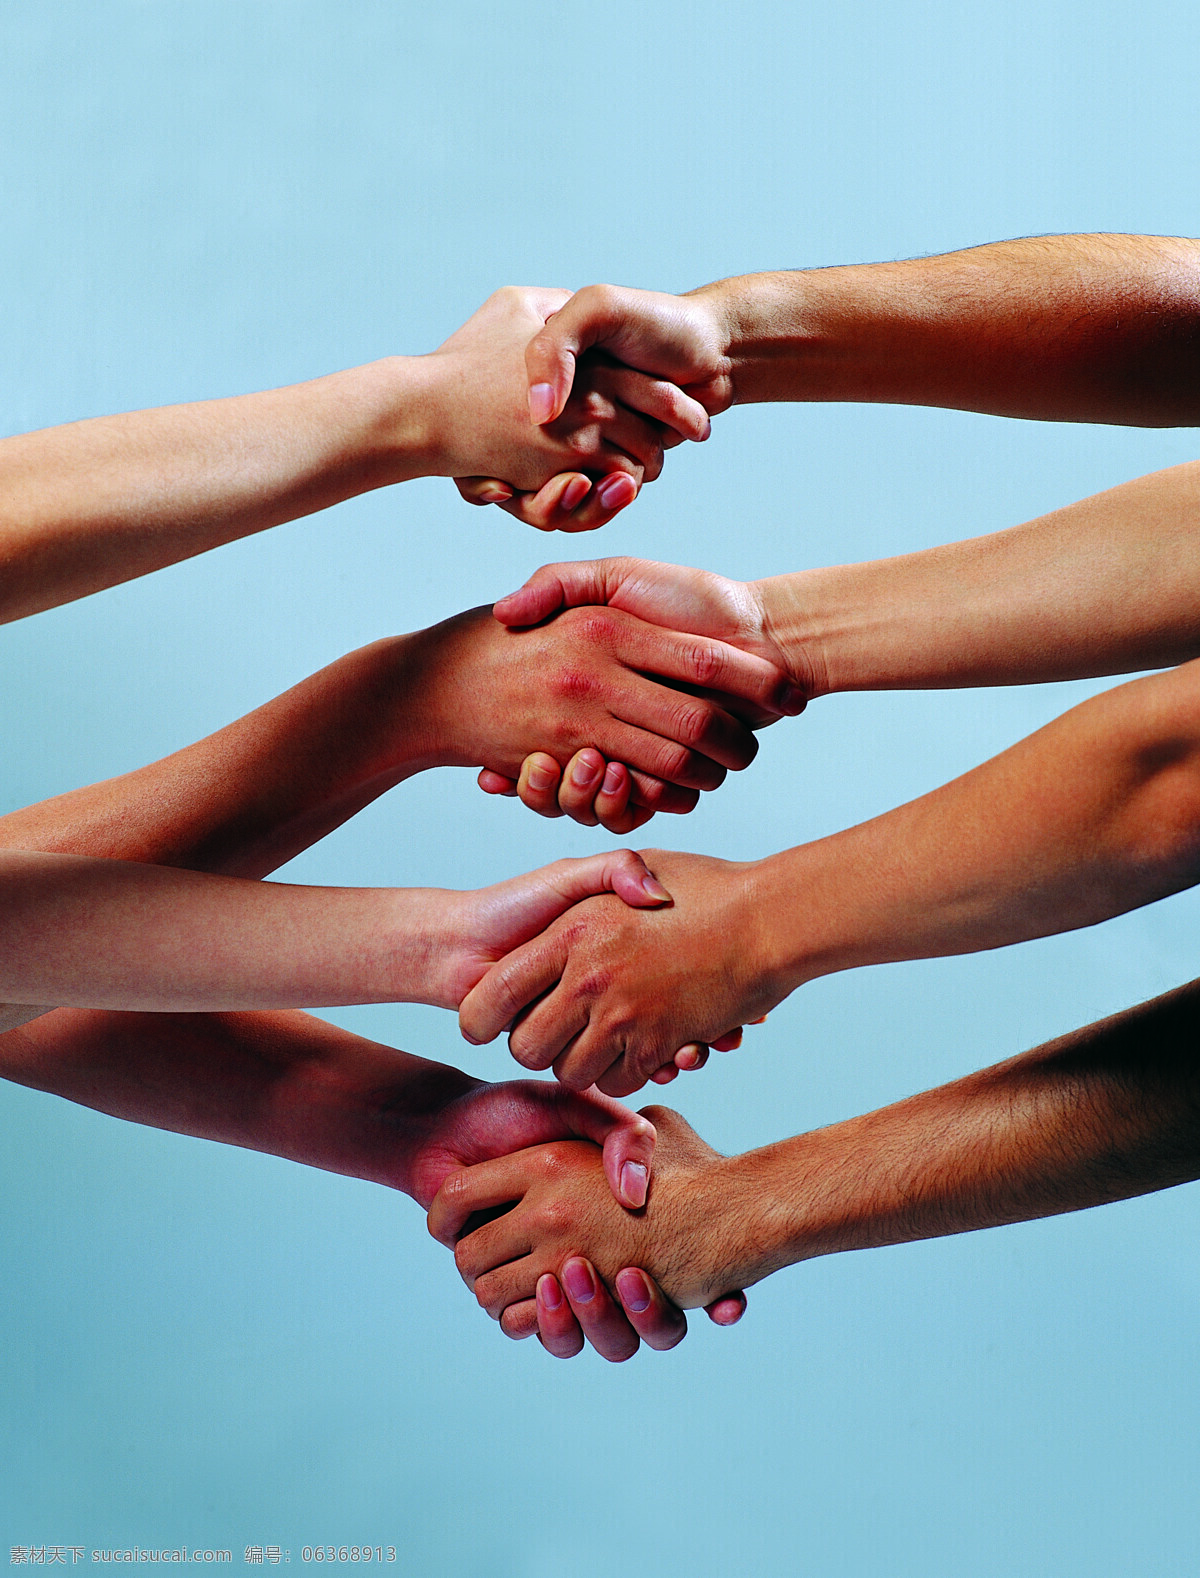 团队 合作 团队与合作 握手 双手 手势 团队精神 团结 企业文化 高清图片 人体器官图 人物图片